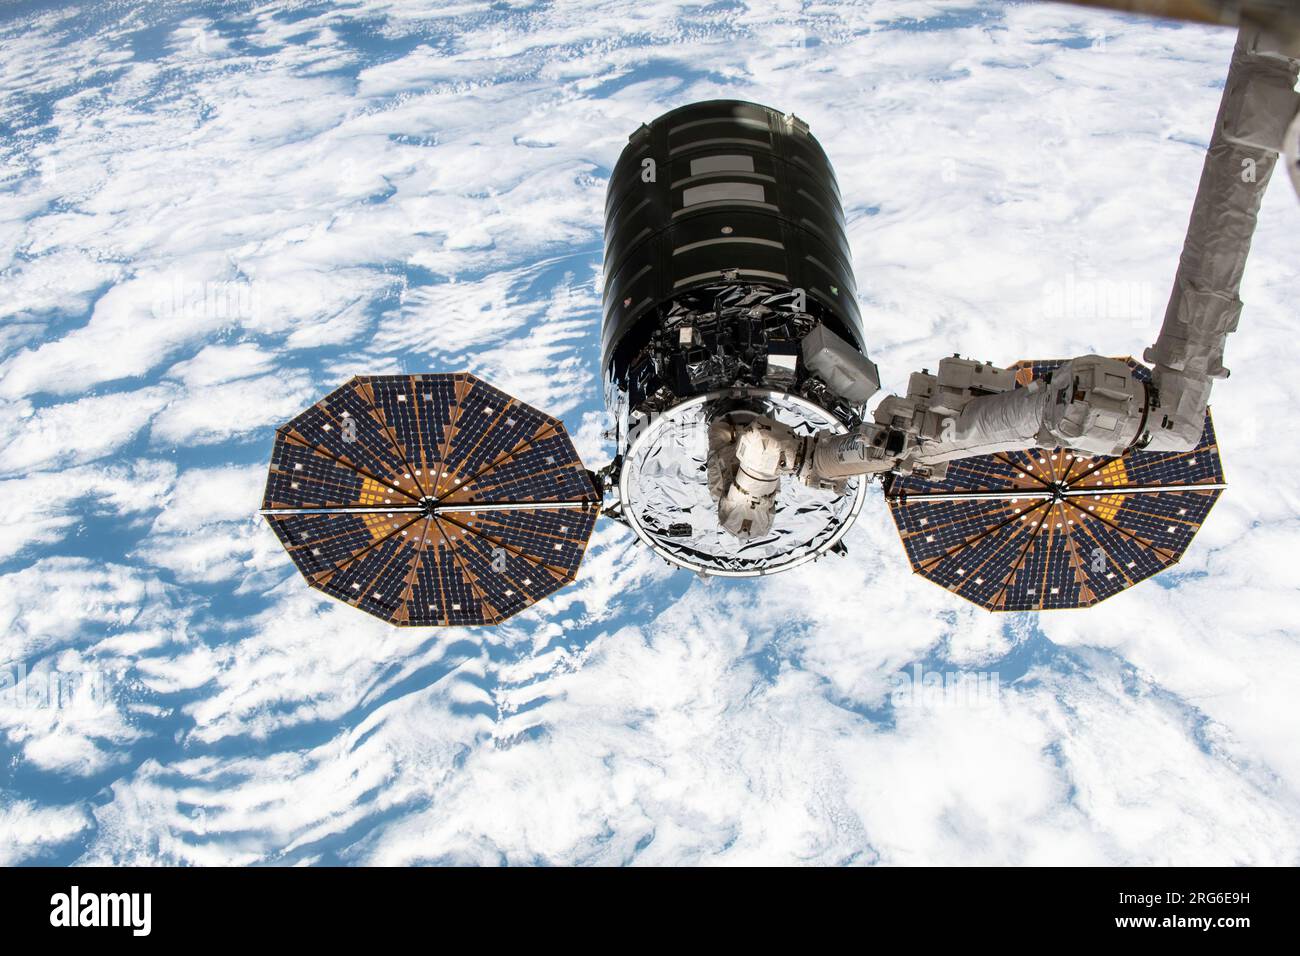 Le vaisseau cargo Cygnus dans les poignées du bras robotique Canadarm2 au-dessus de la Terre. Banque D'Images